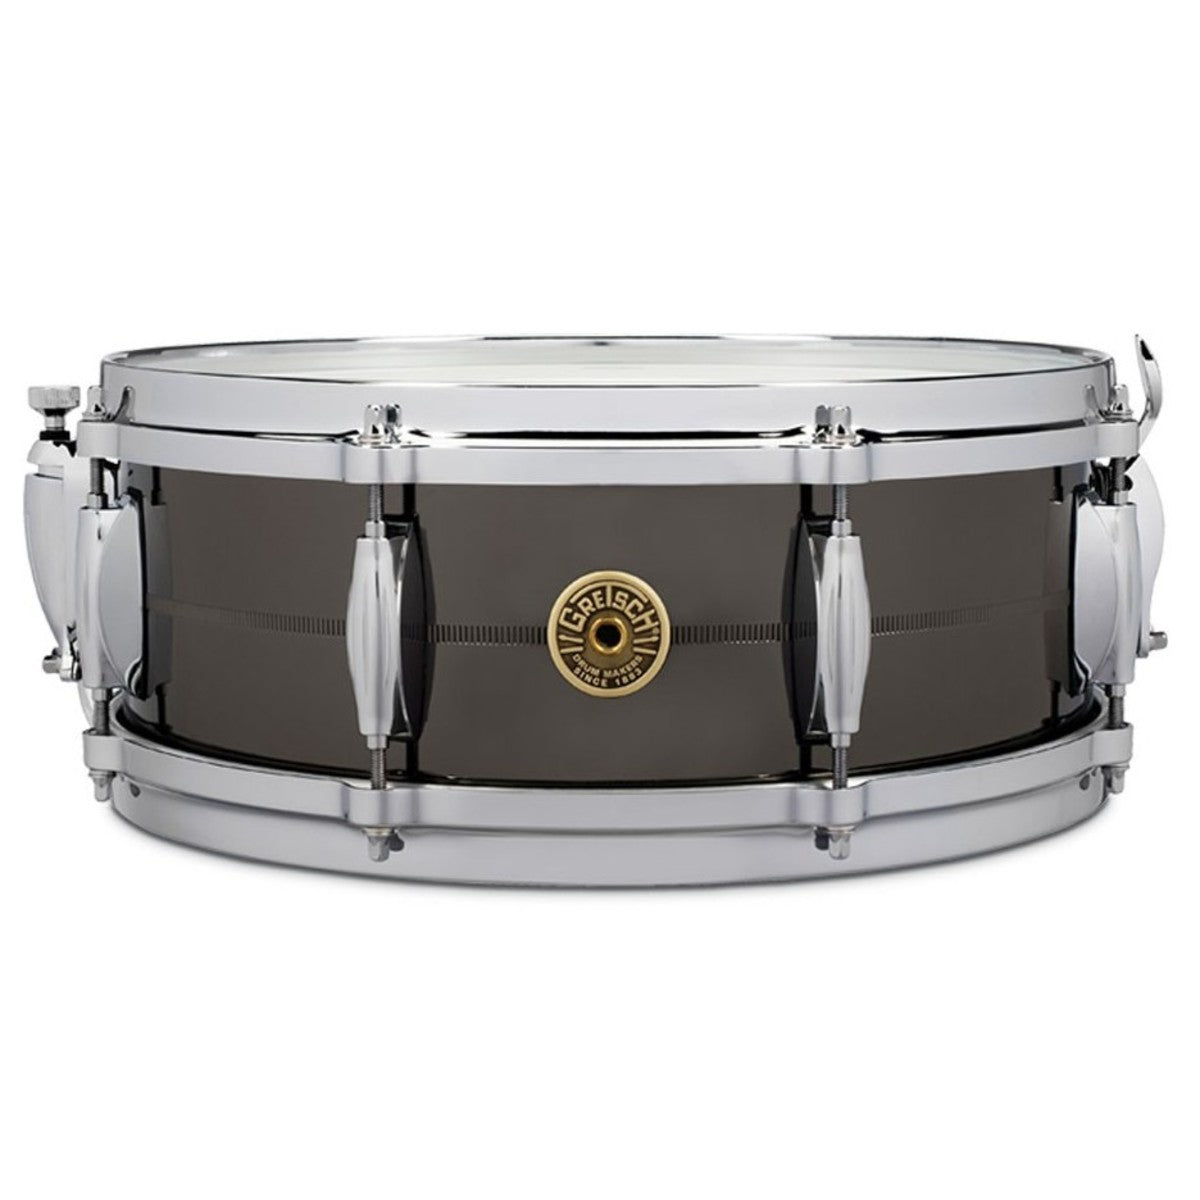 Gretsch USA Solid Steel 14"x5" Snare Drum